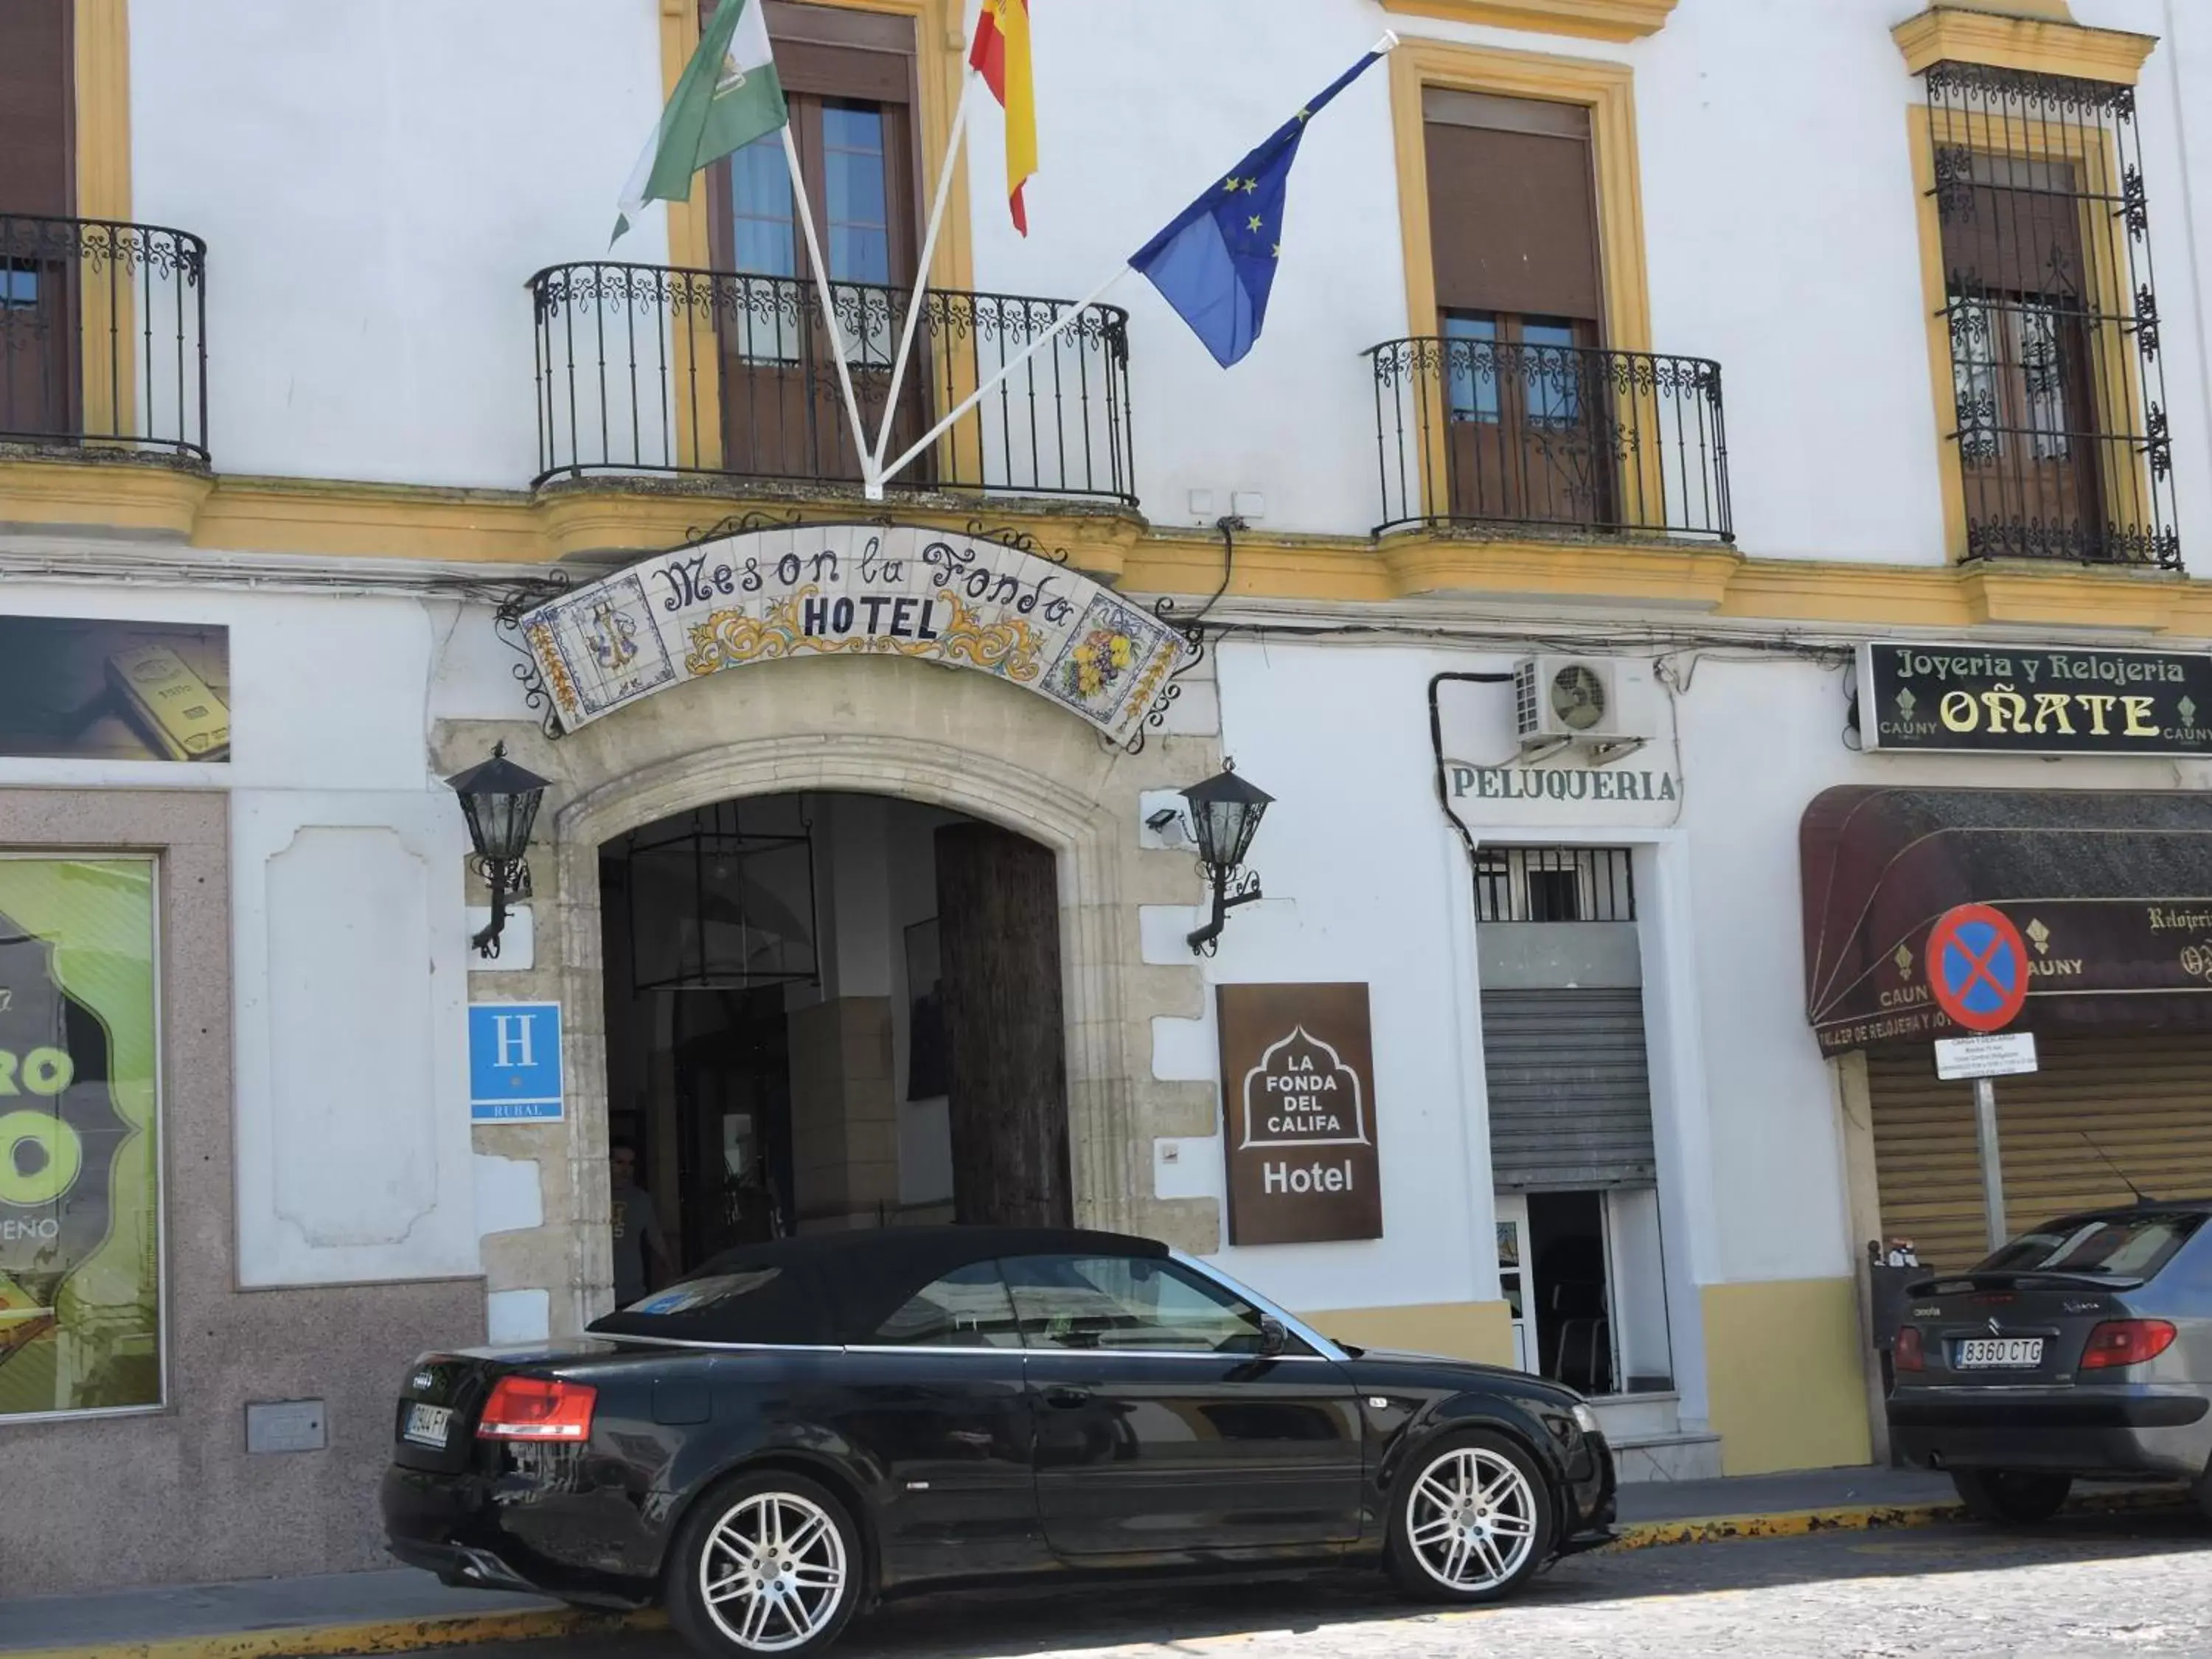 Facade/Entrance in Hotel La Fonda del Califa